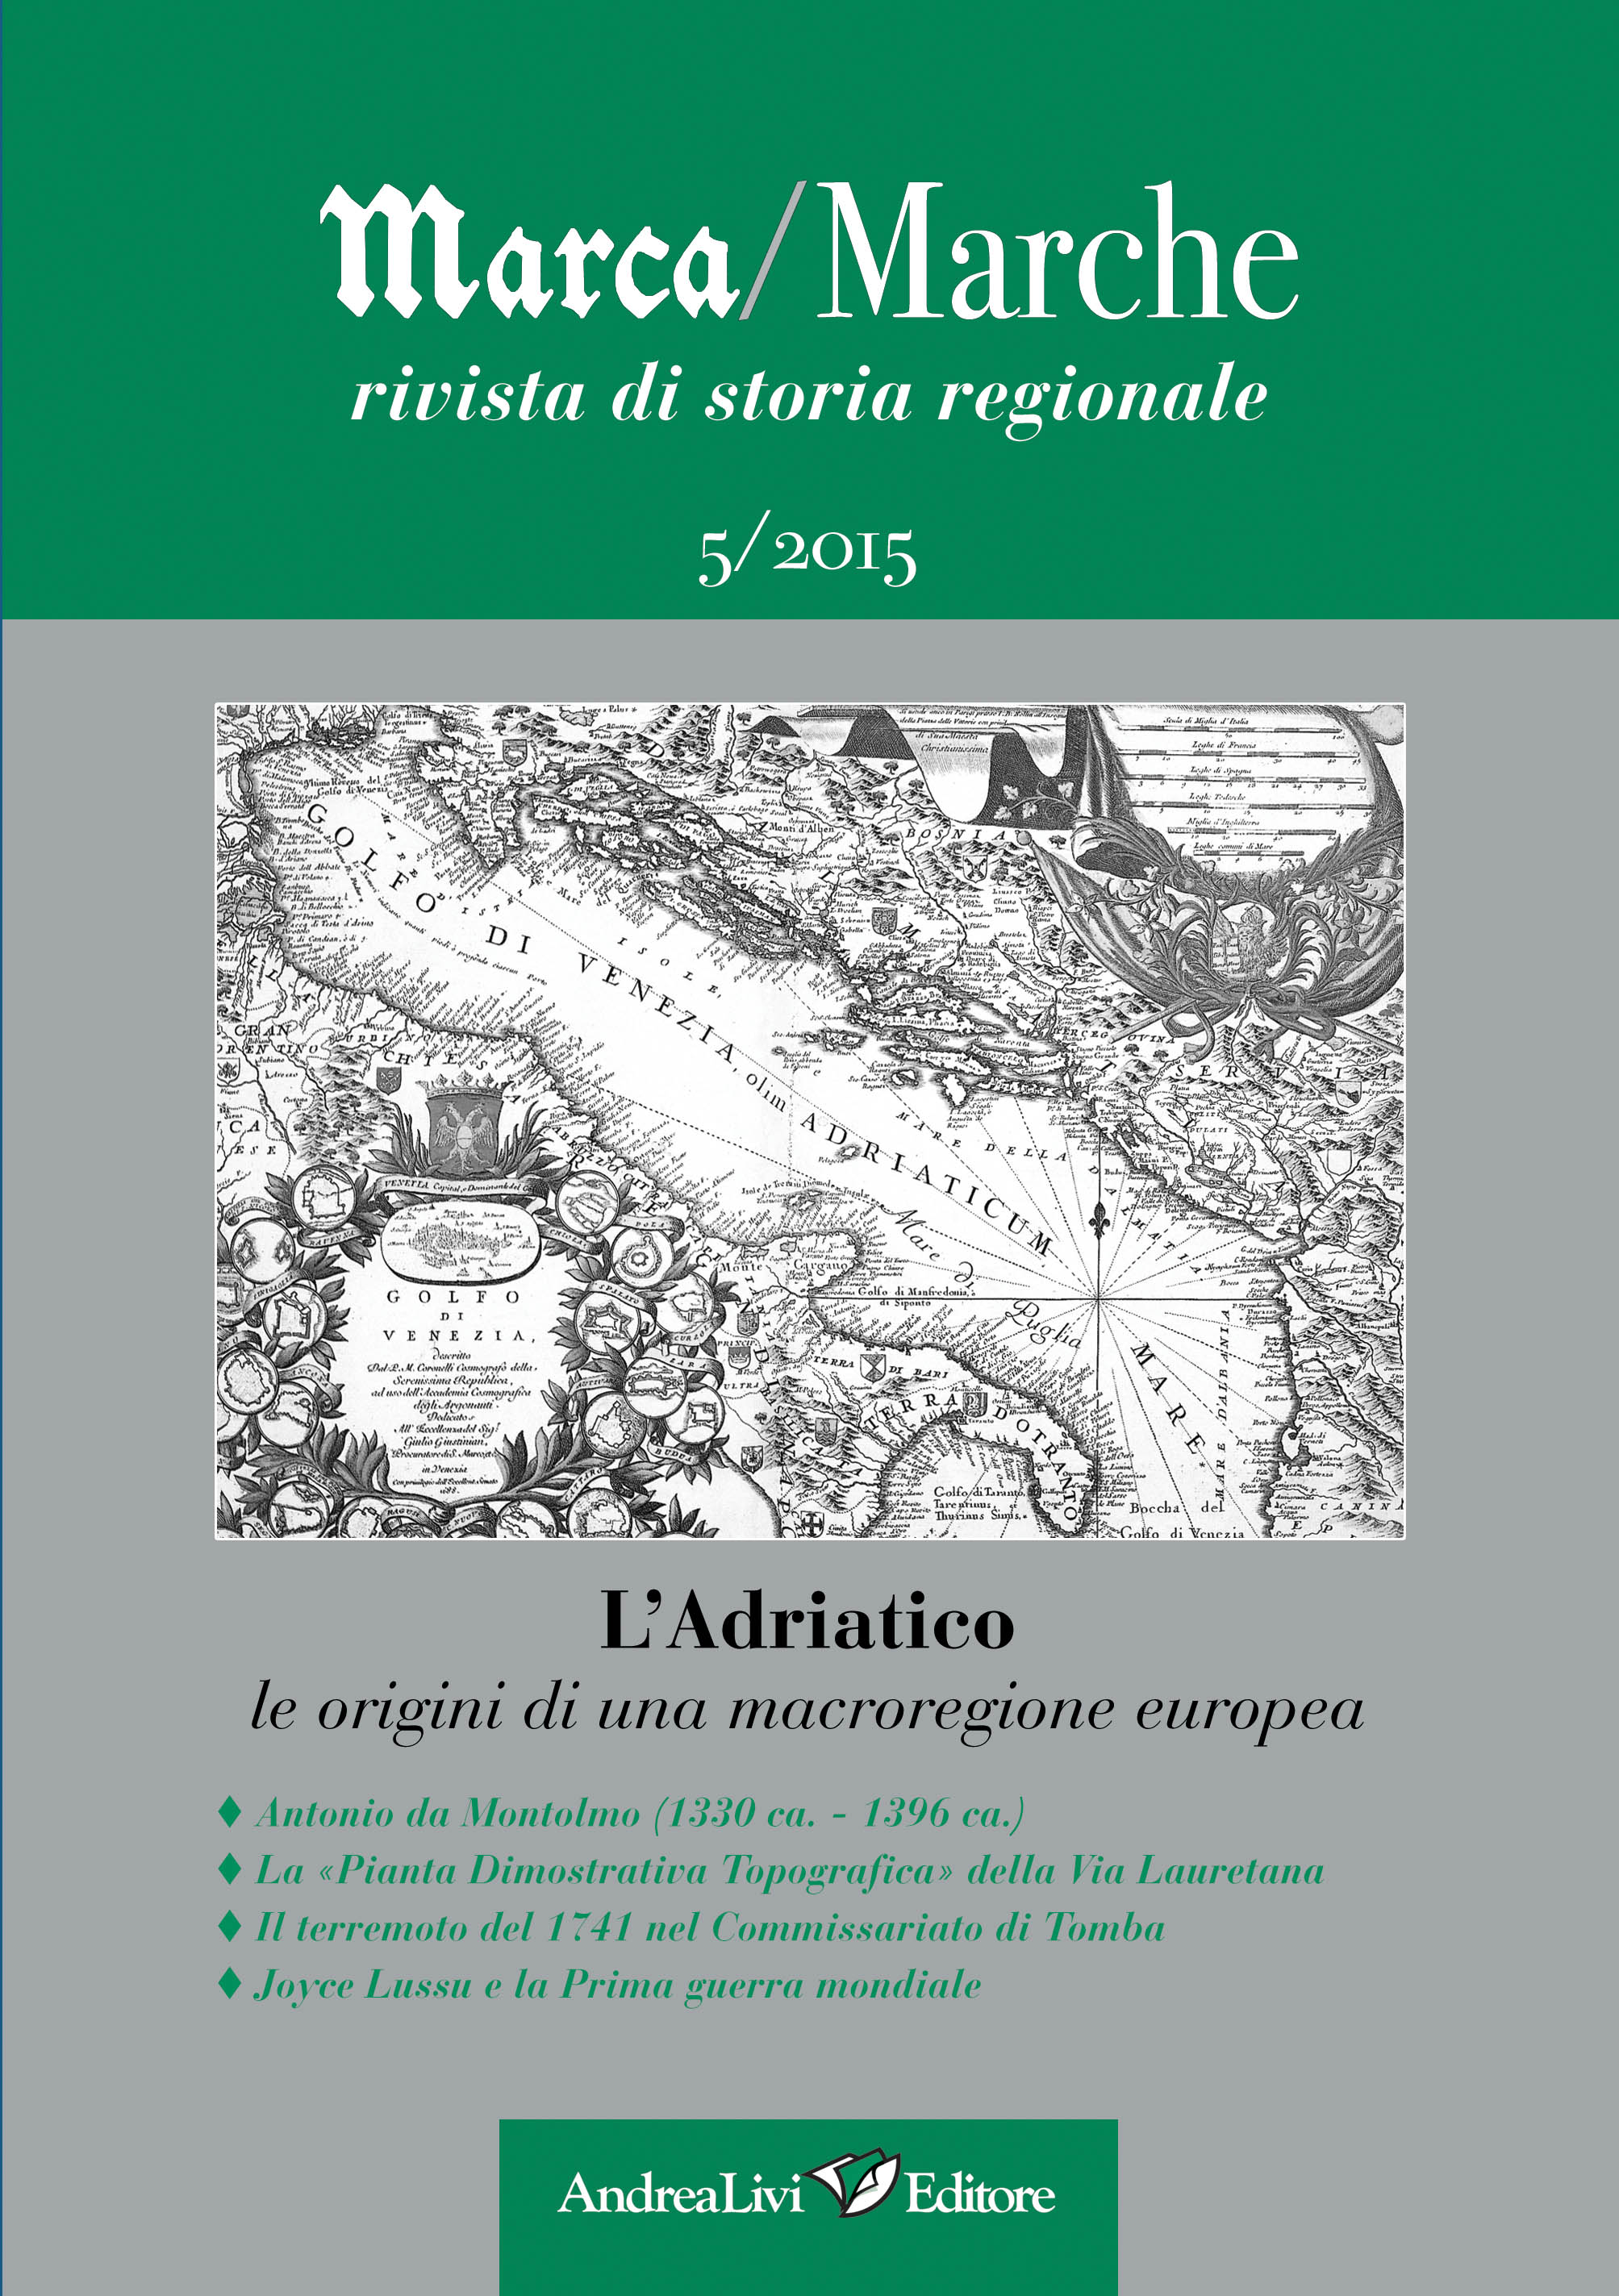 L’Adriatico; le origini di una macroregione europea, a cura di Marco Moroni, «Marca/Marche», 5 (2015)